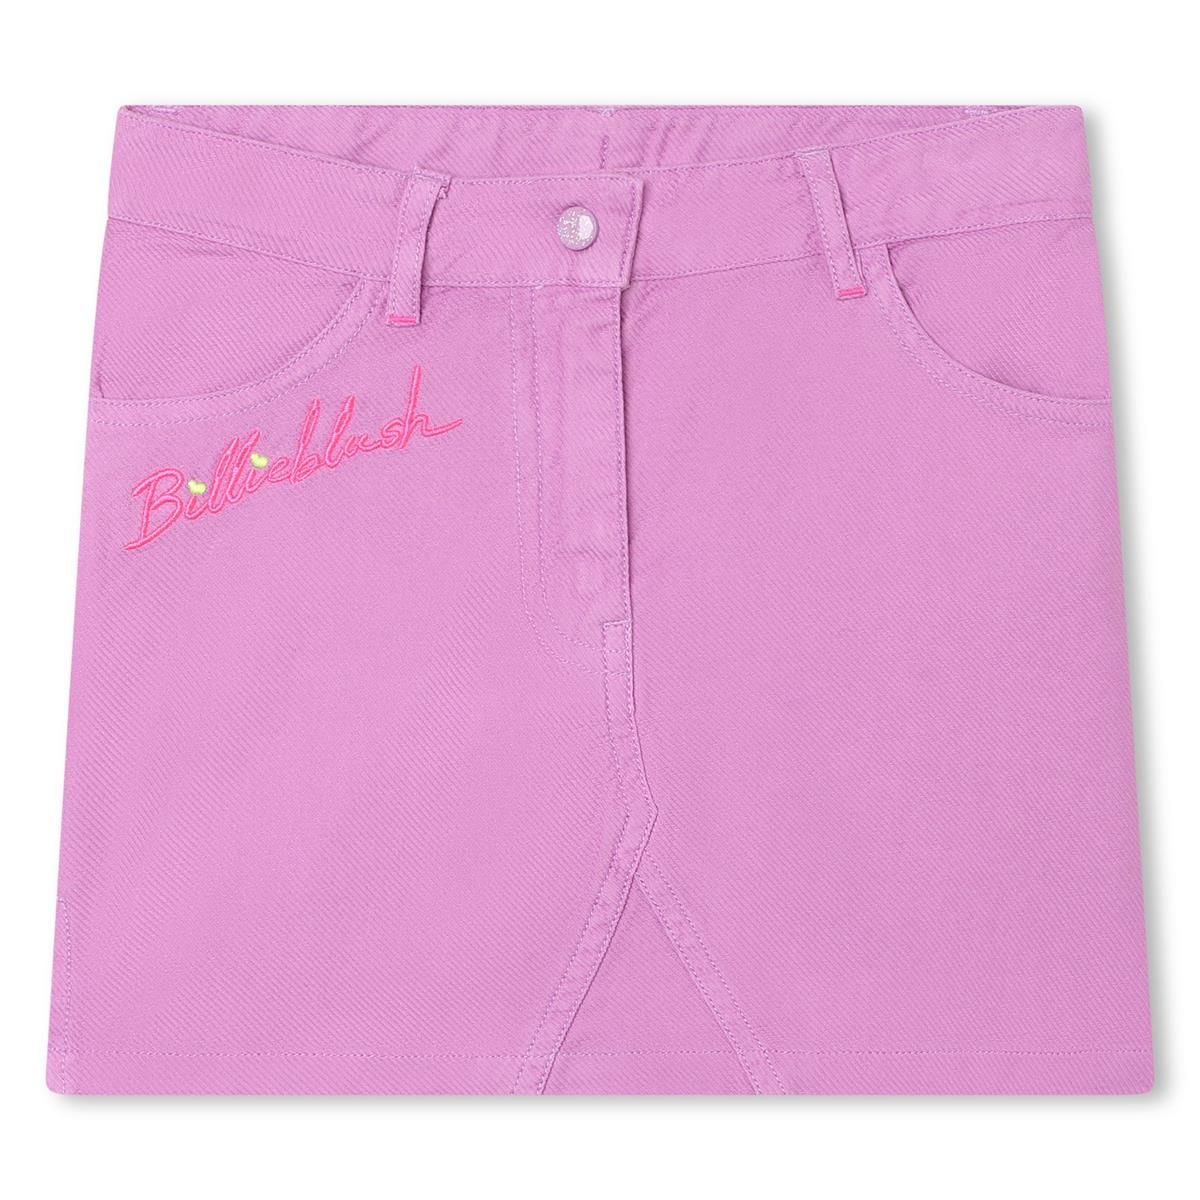 Girls Pink Skirt